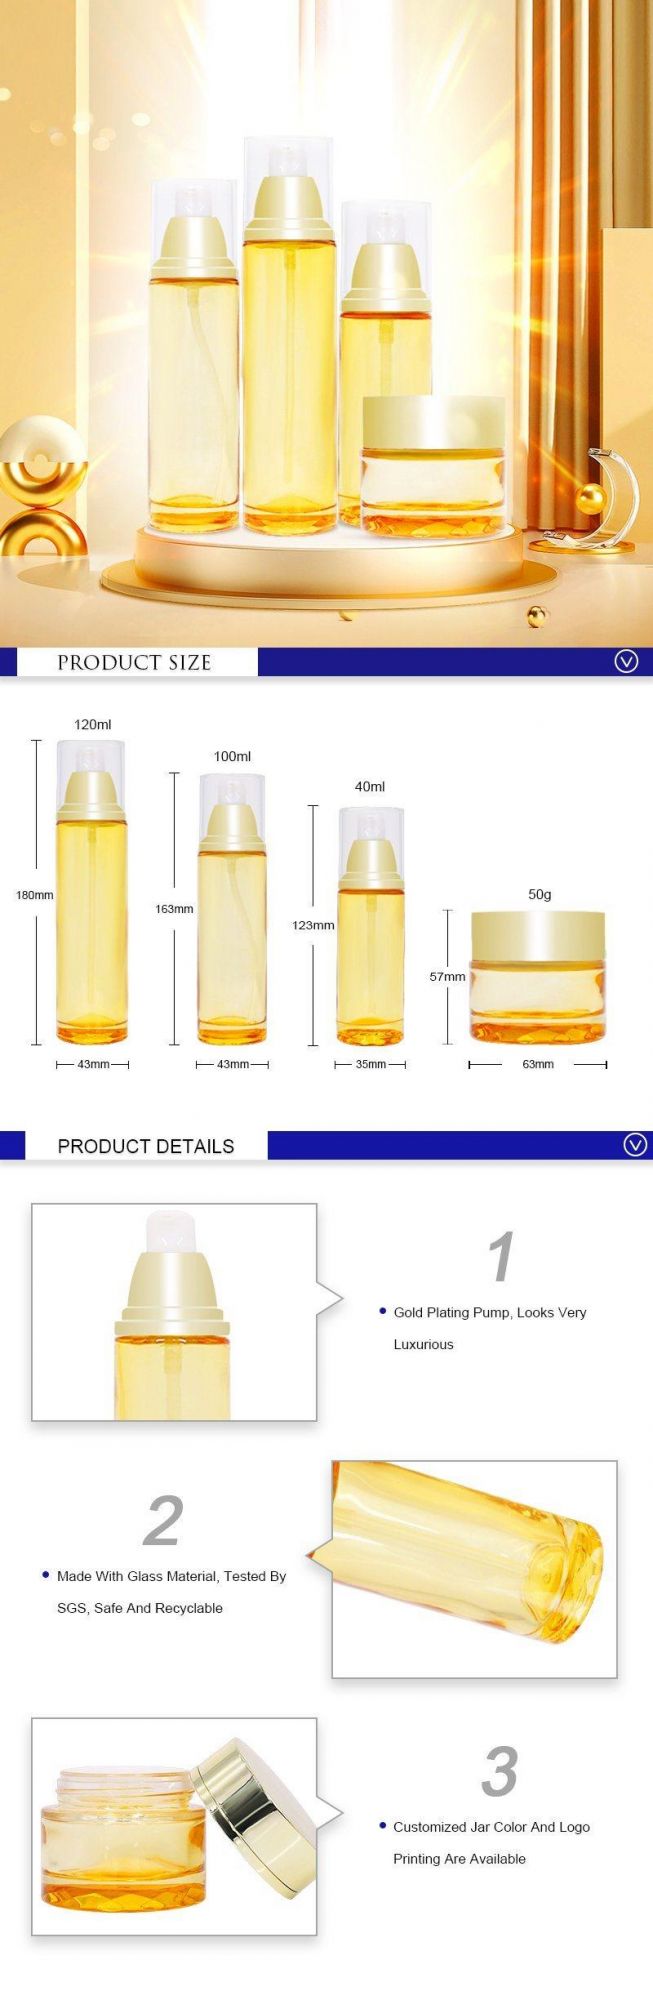 Custom Luxury Glass Skincare Packaging120ml 100ml 40ml 50ml Bottles Lotion Jar